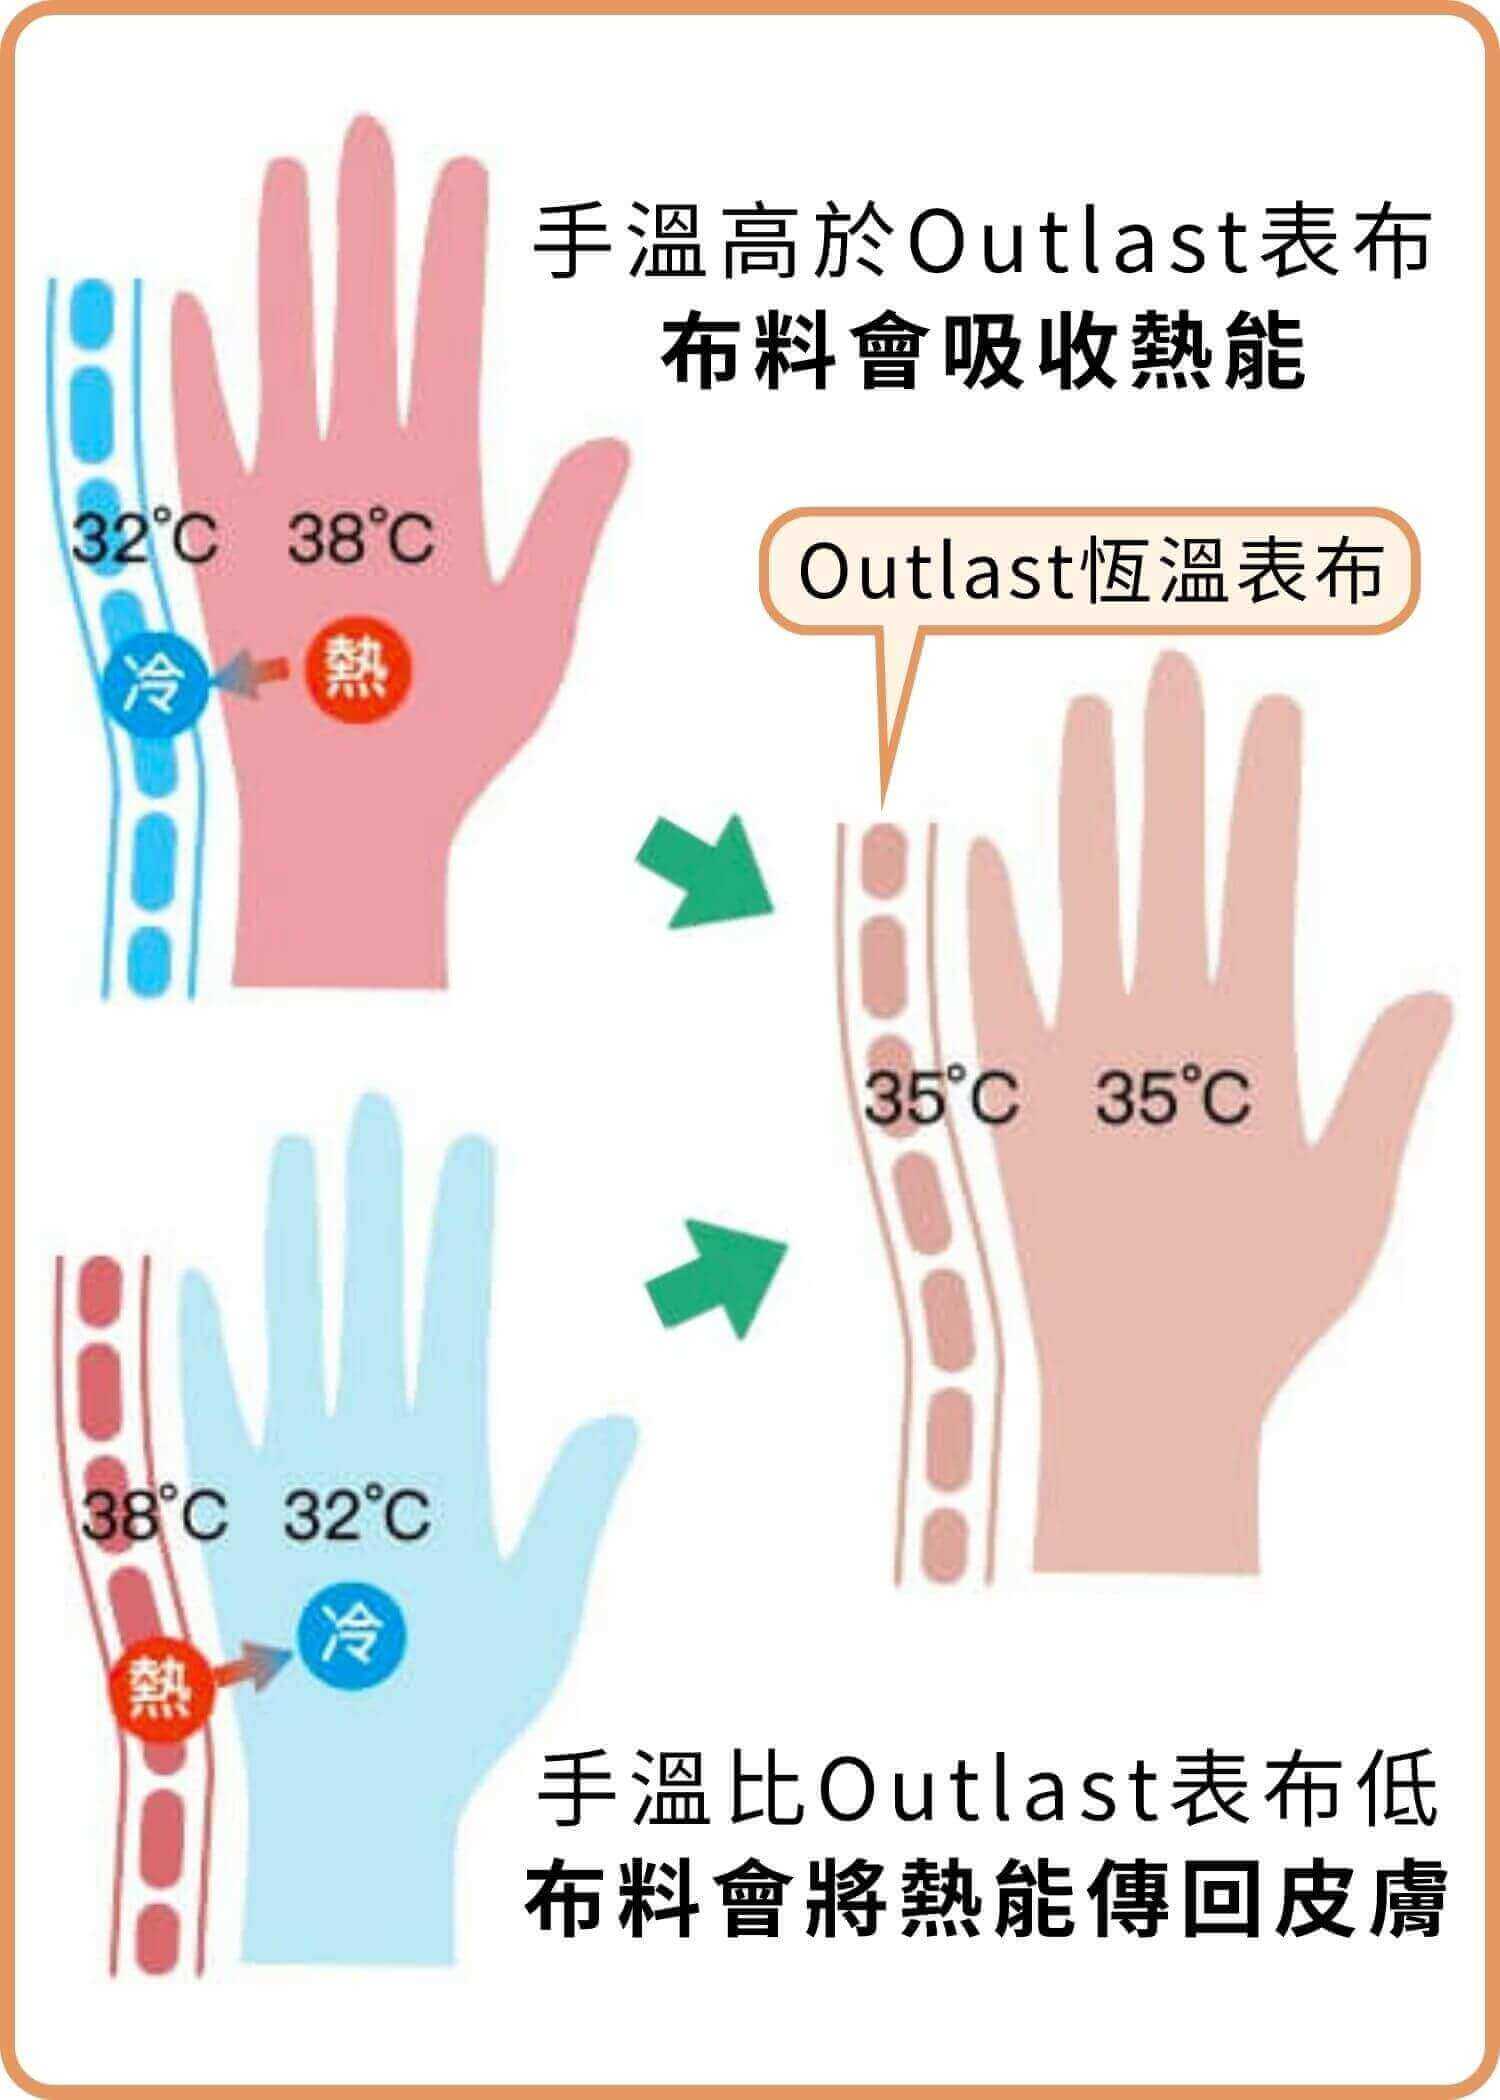 手溫高於Outlast恆溫表布，布料會吸收熱能；手溫比Outlast表布低，布料會將熱能傳回皮膚